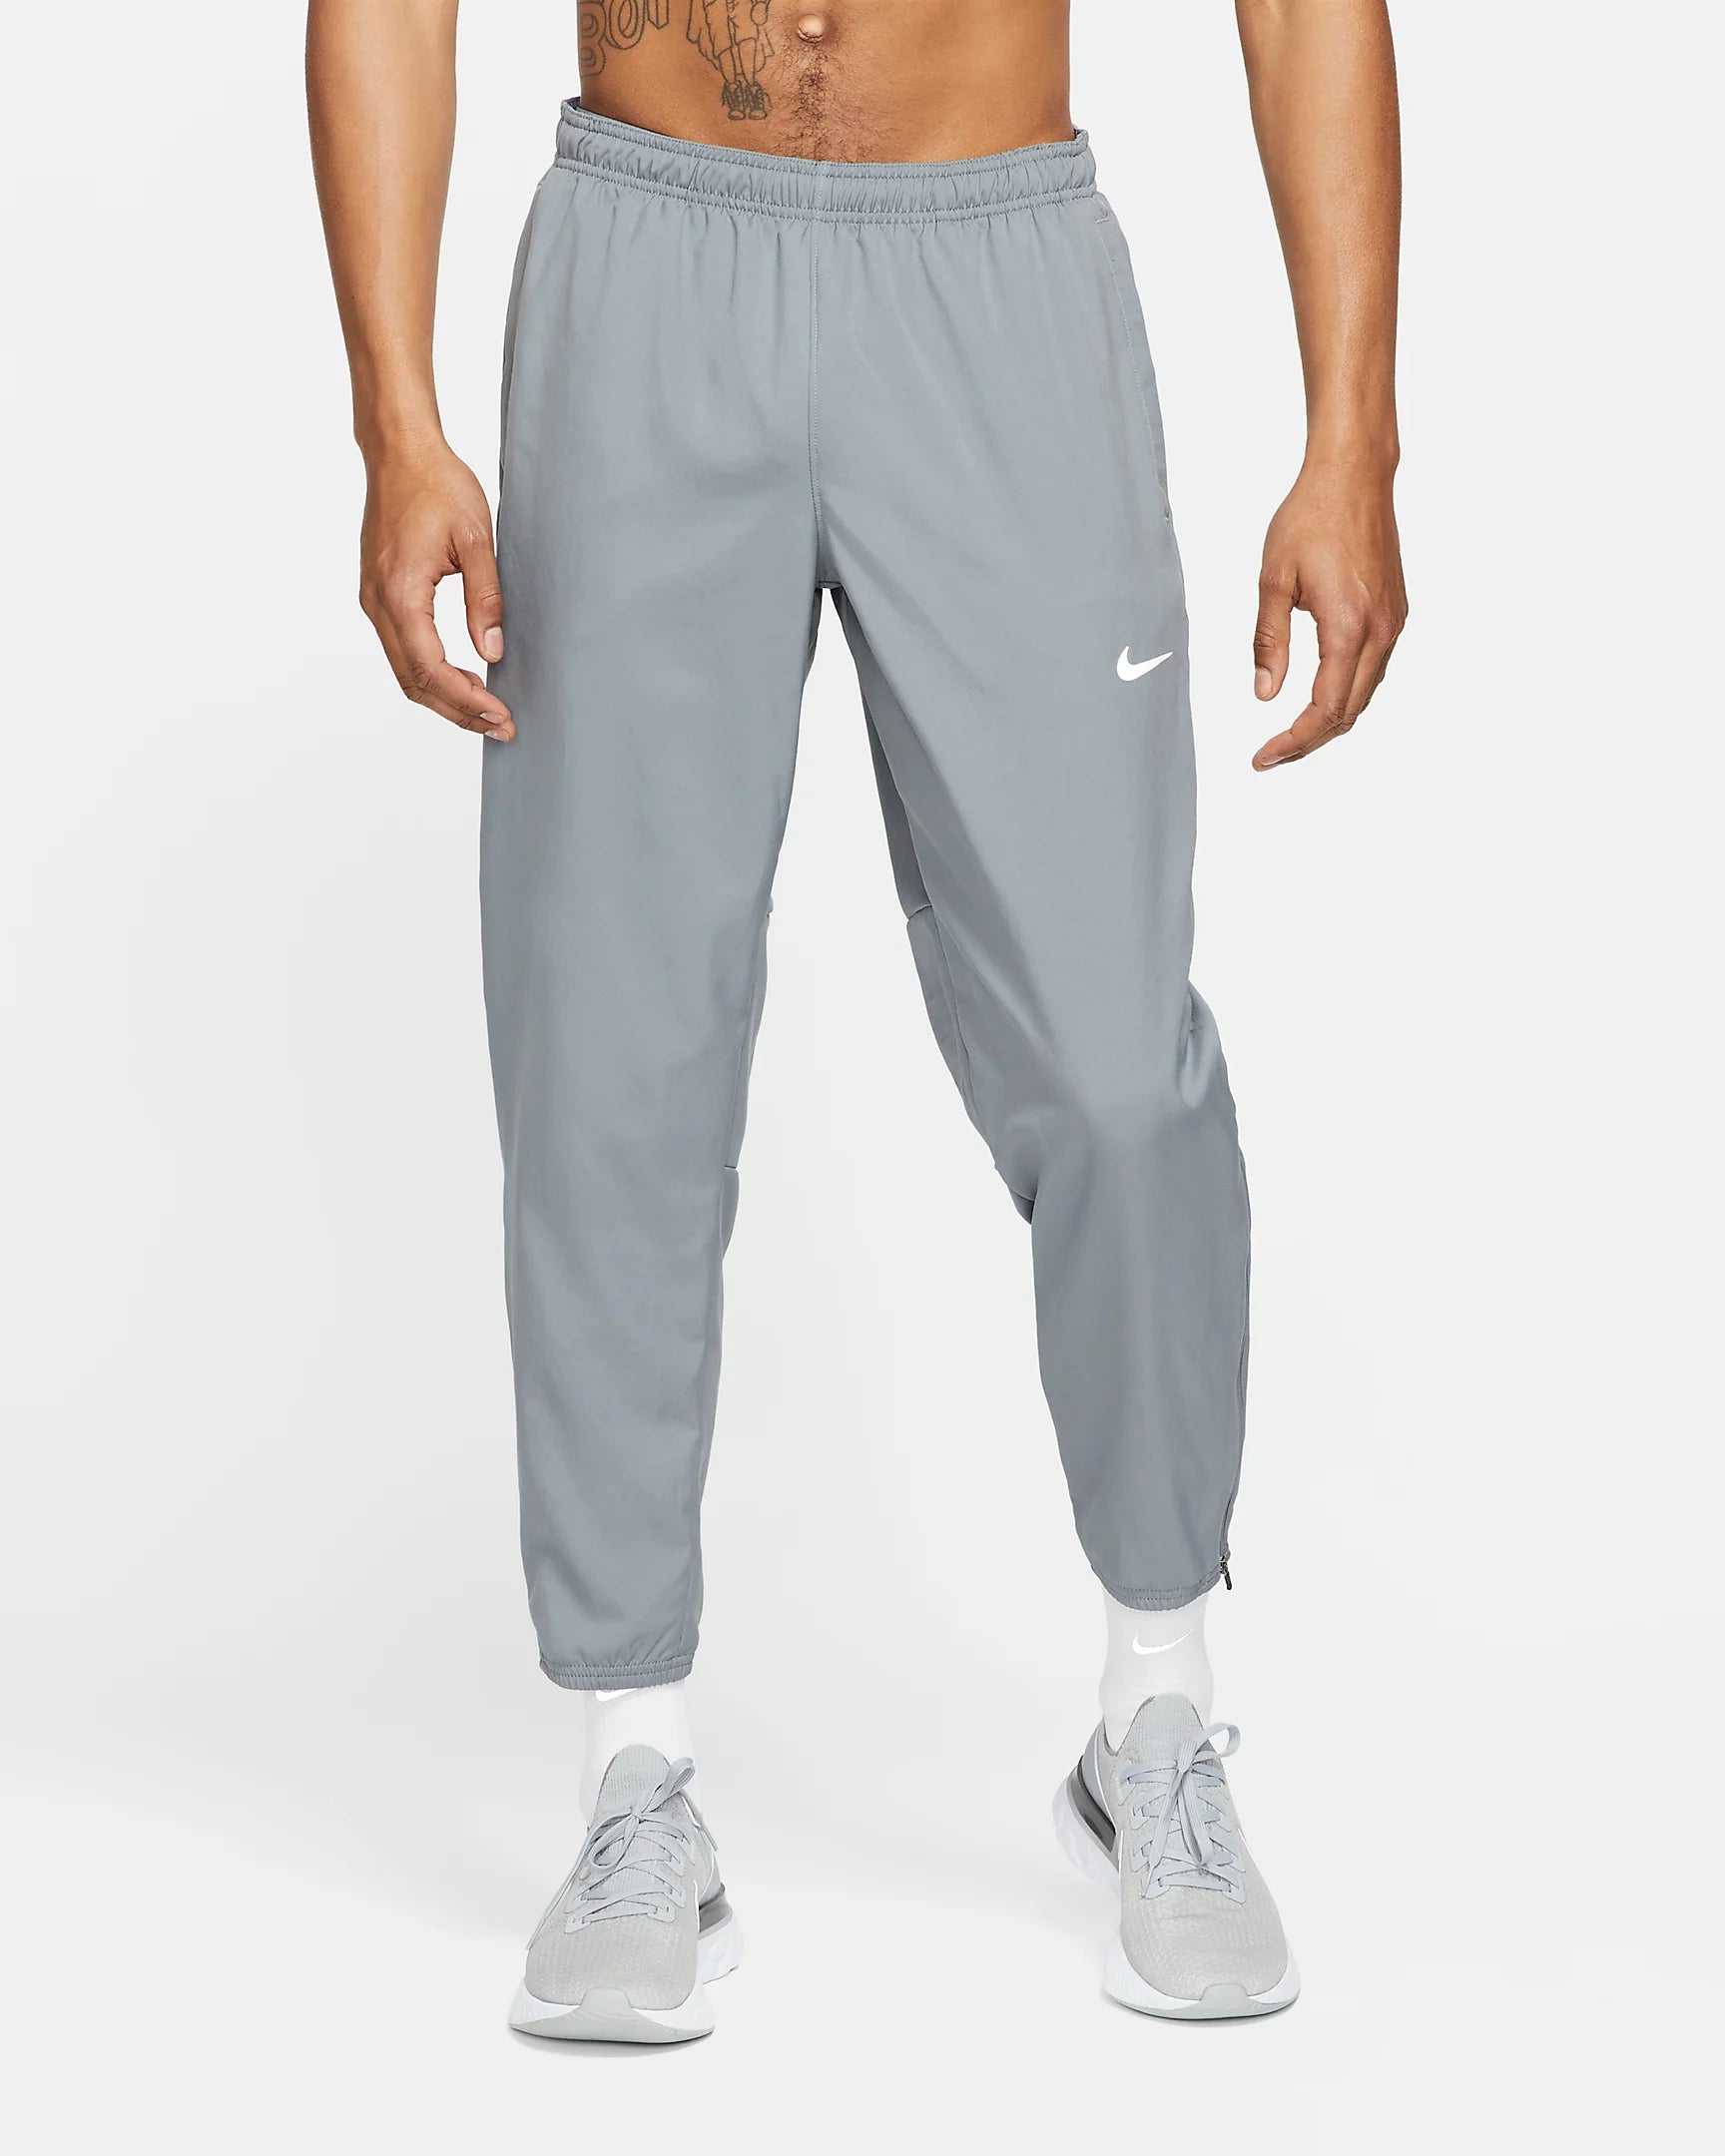 Pantalon Nike Dri-FIT Challenger - Gris